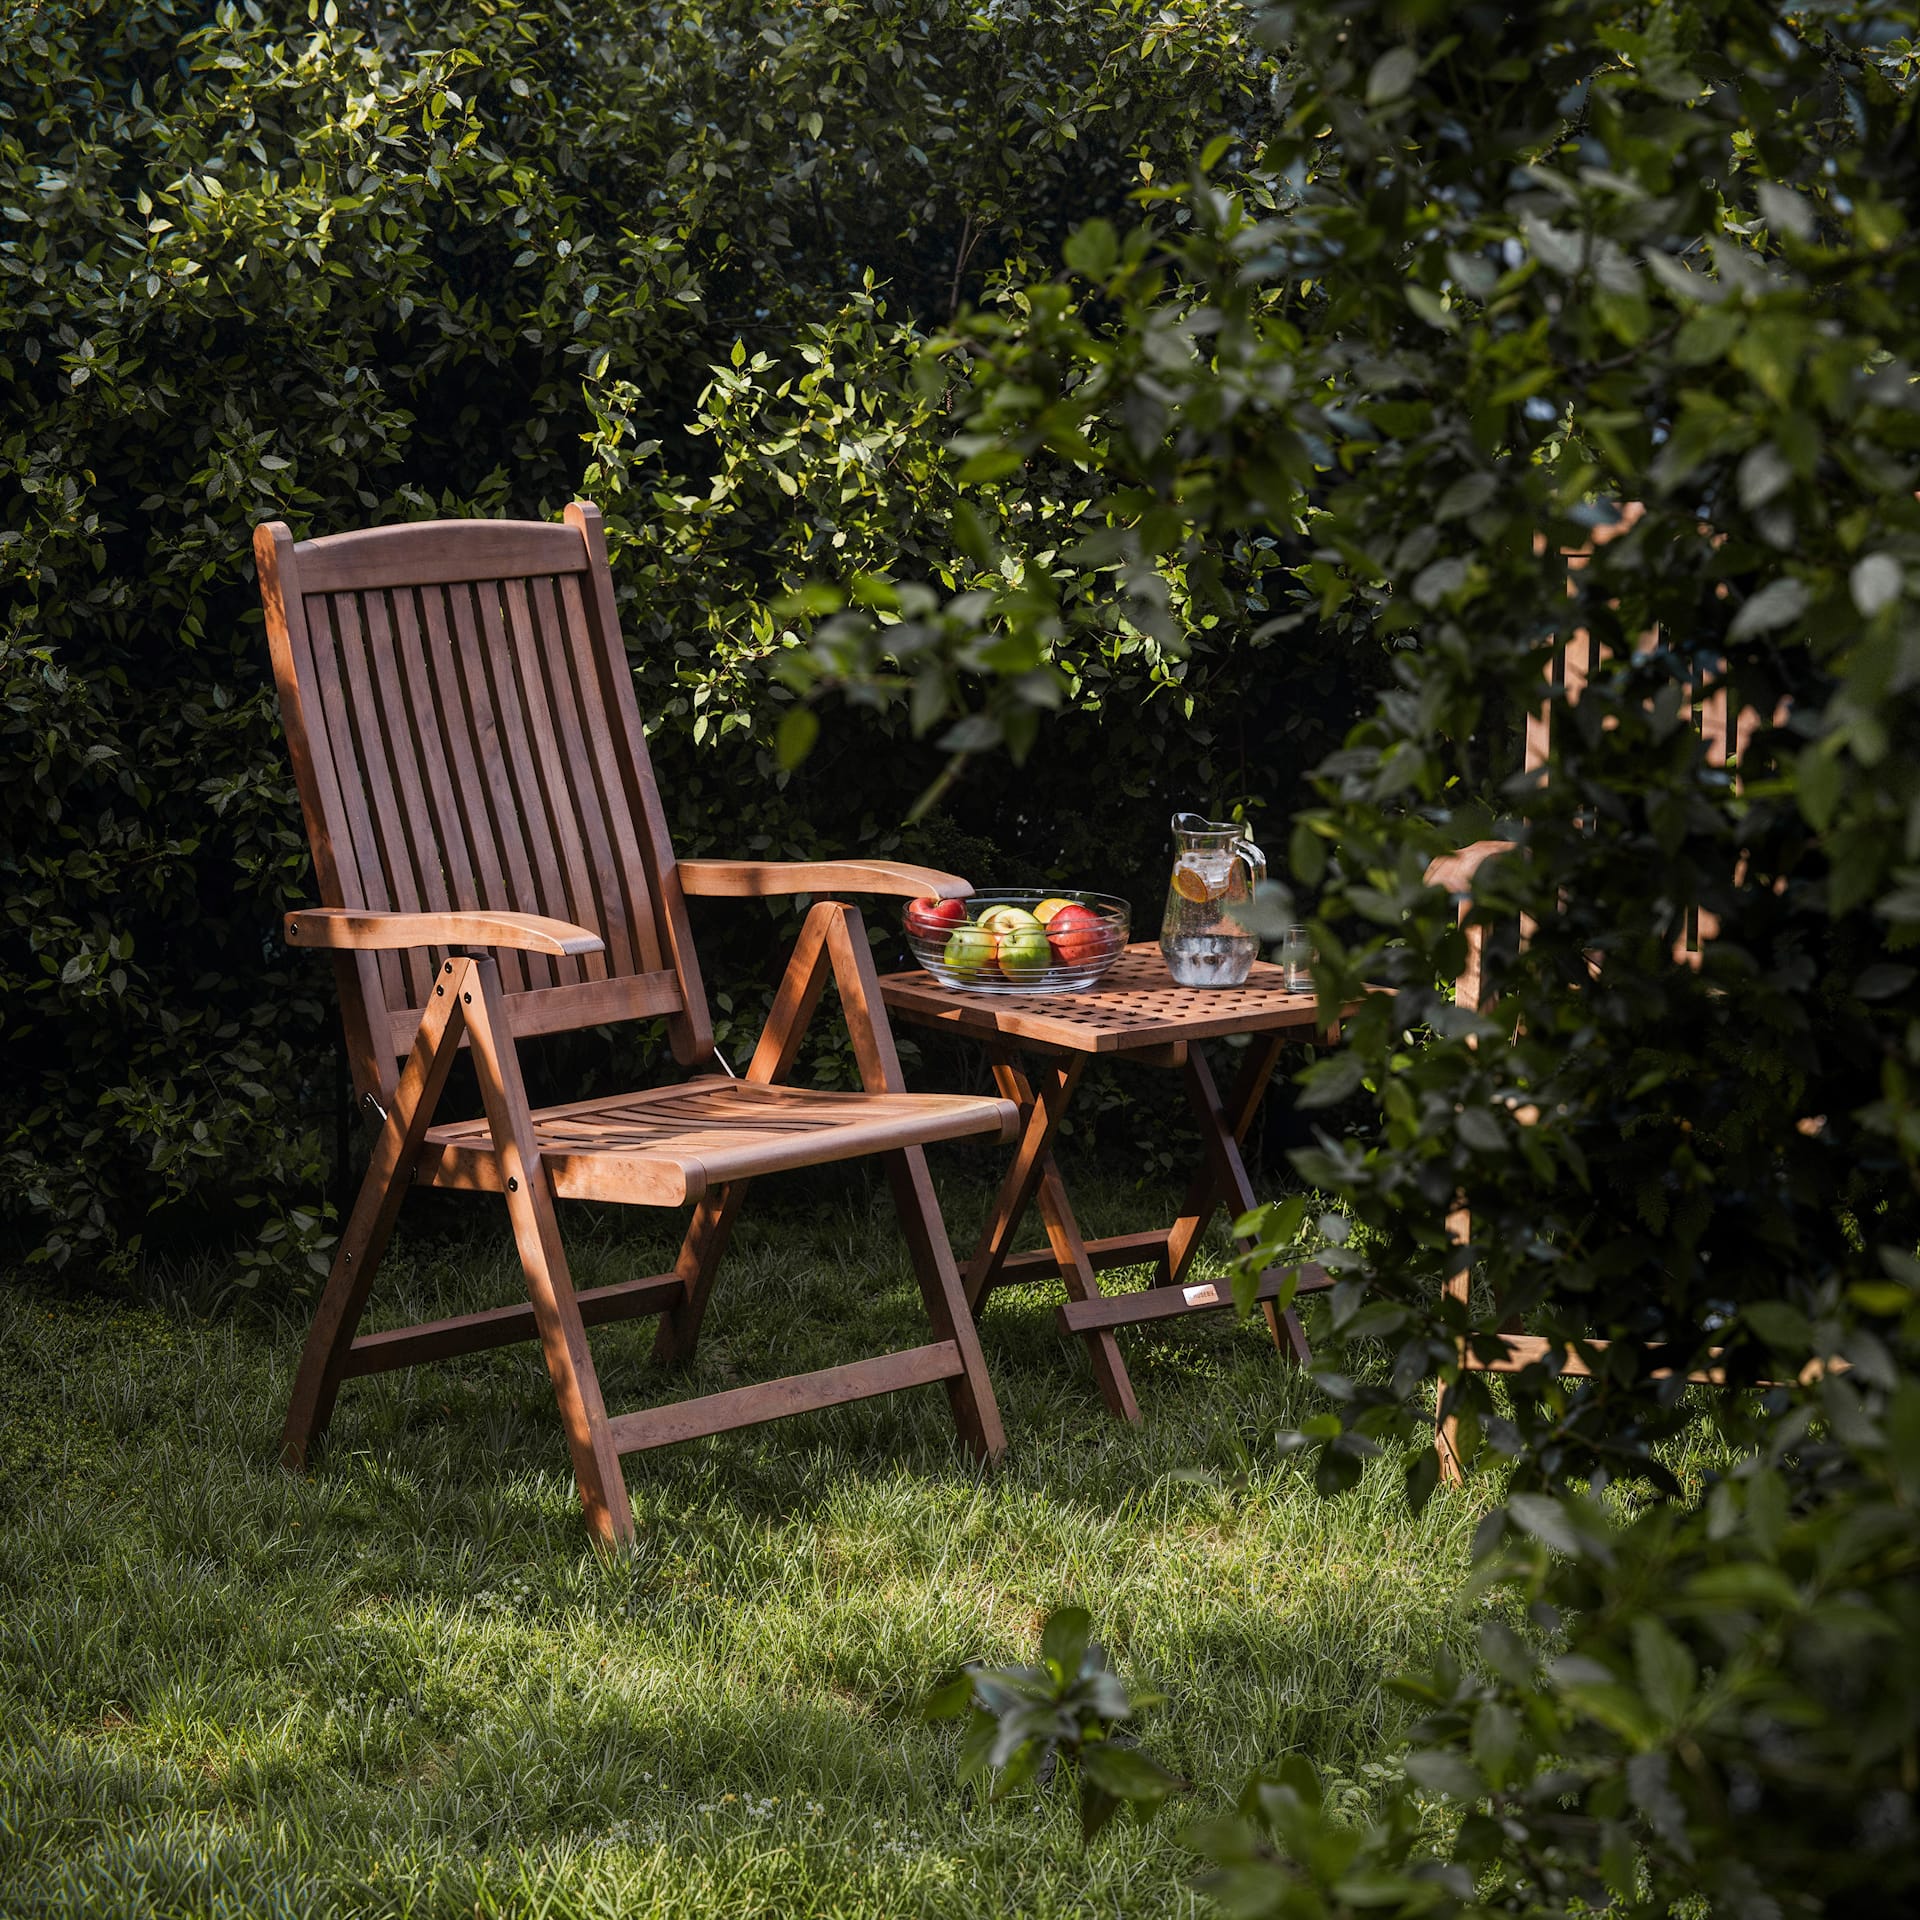 Midsummer Recliner Chair - A. Huseby - NO GA